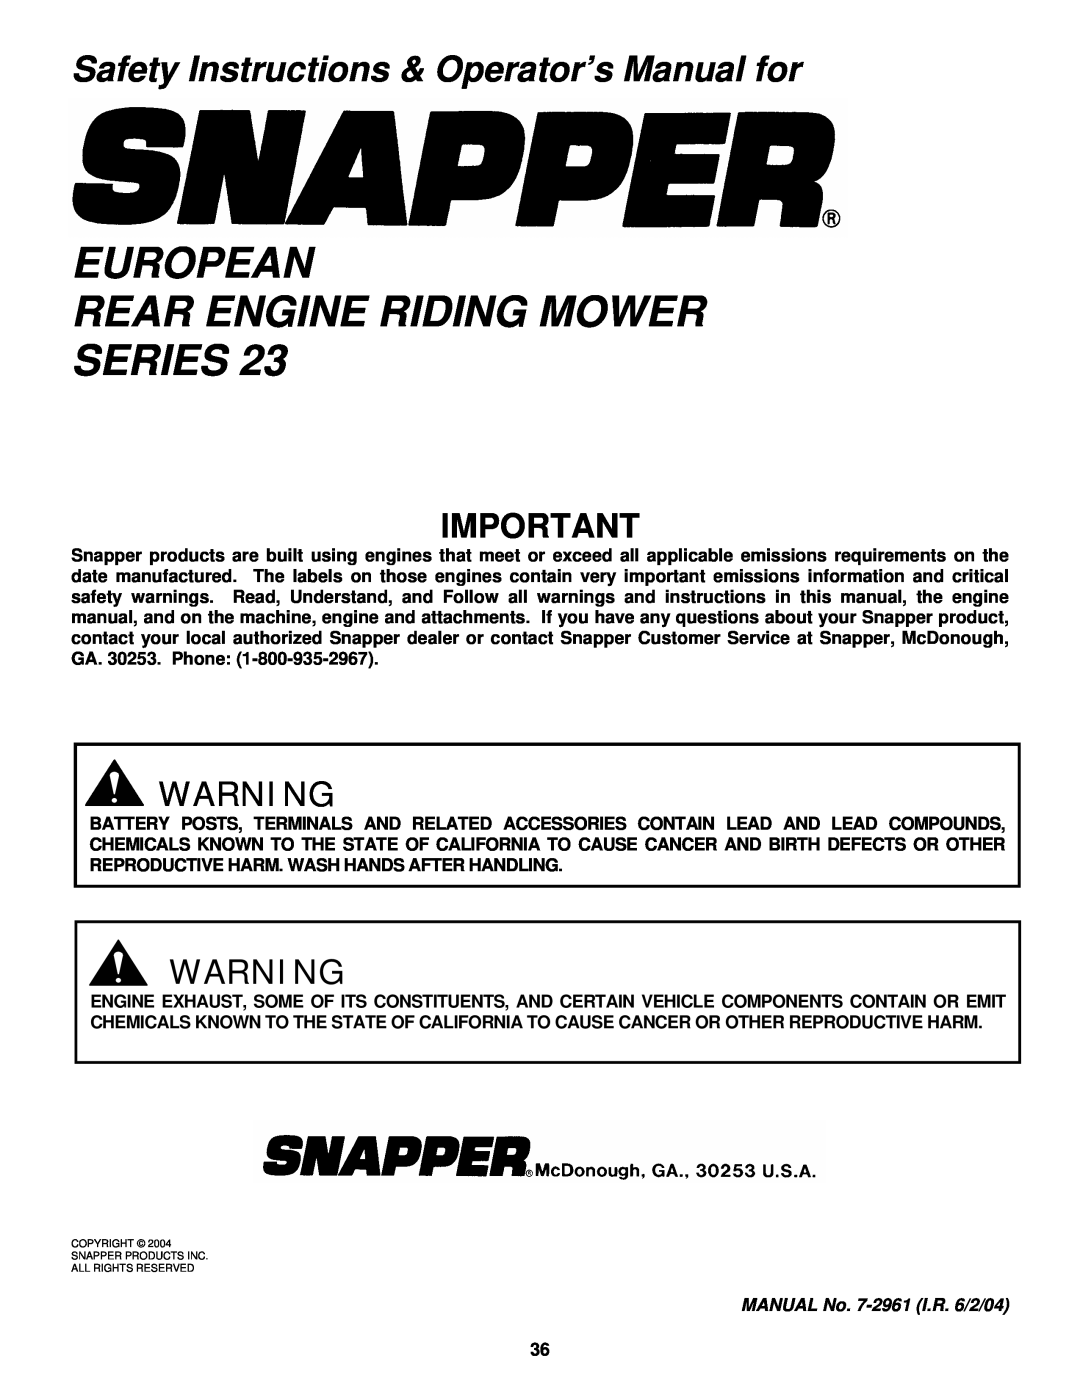 Snapper E2512523BVE, E2812523BVE, E2813523BVE, E331523KVE European Rear Engine Riding Mower Series 